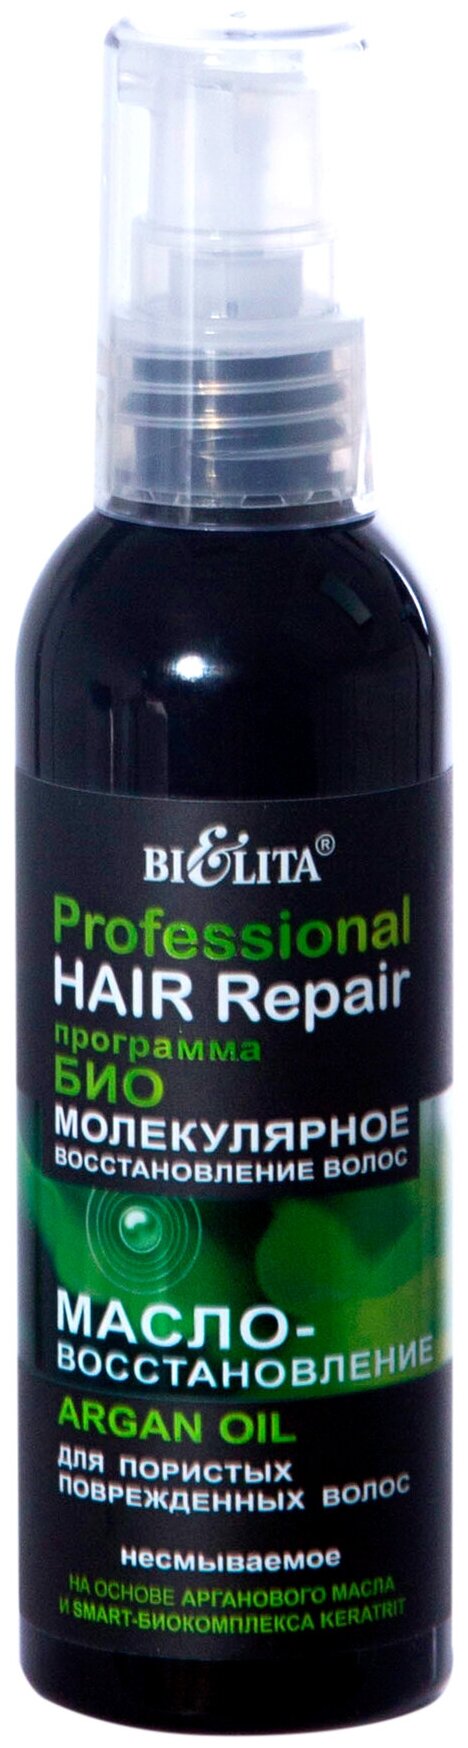 Bielita Professional HAIR Repair Масло-восстановление ARGAN OIL для пористых поврежденных волос, 91 г, 100 мл, бутылка